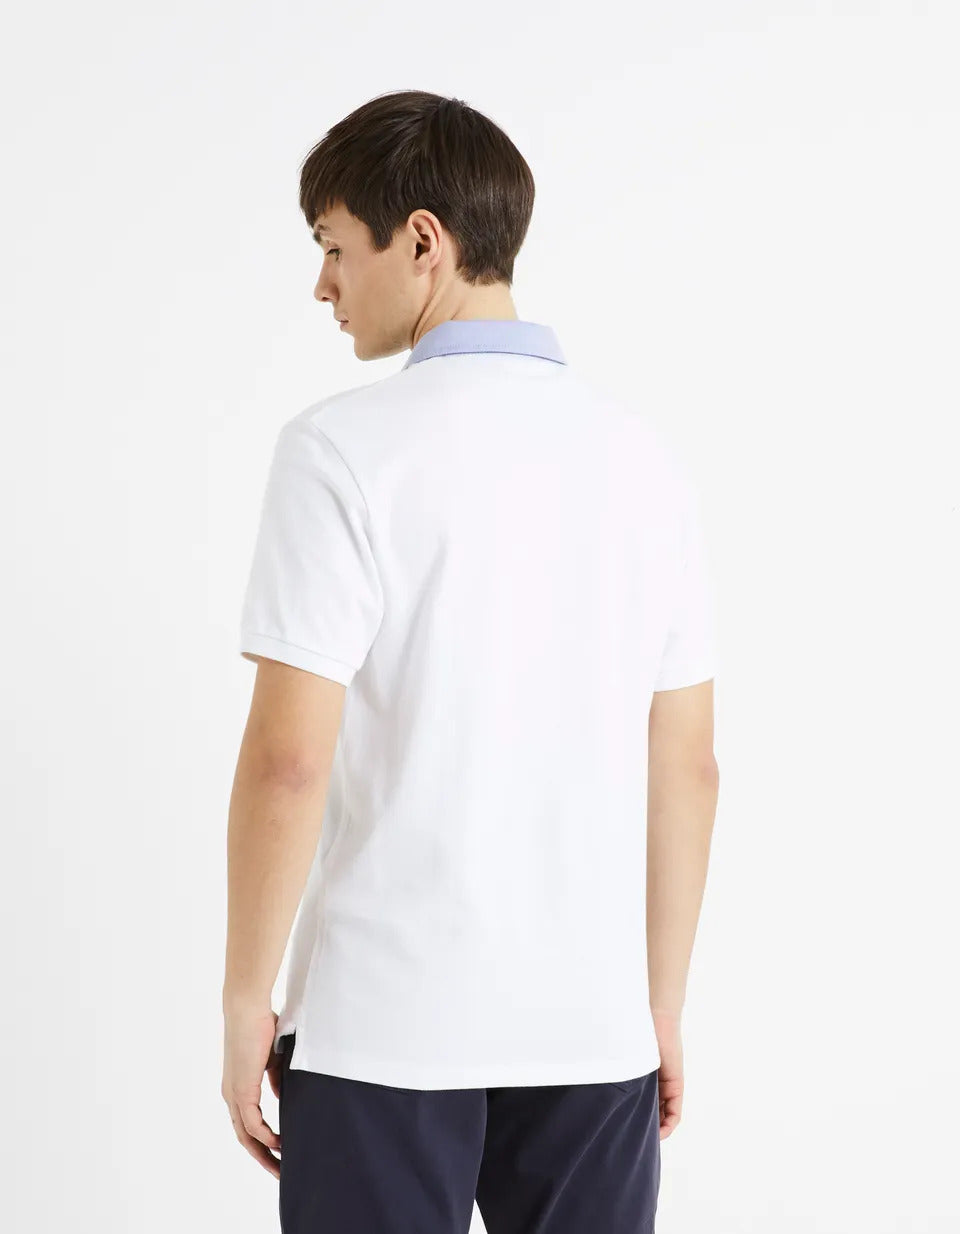 Pique Polo Shirt Collar 100% Cotton - White - 02